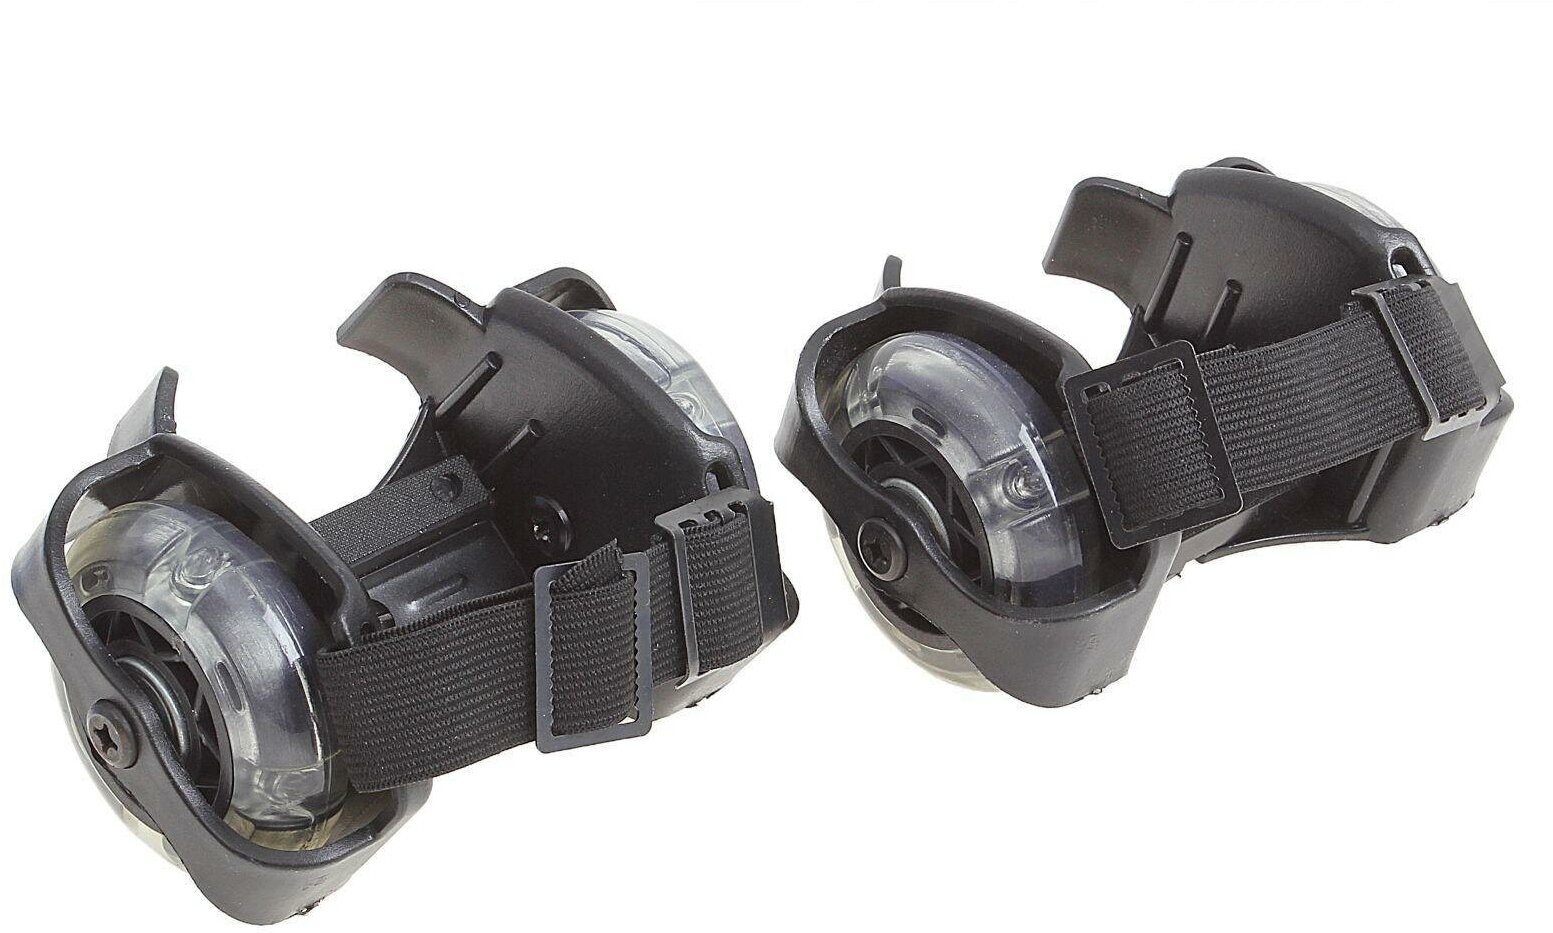 Ролики раздвижные для обуви, мини, светящиеся колеса, РVC, d=70 мм, до 70 кг, ширина 6-10 см, цвет чёрный